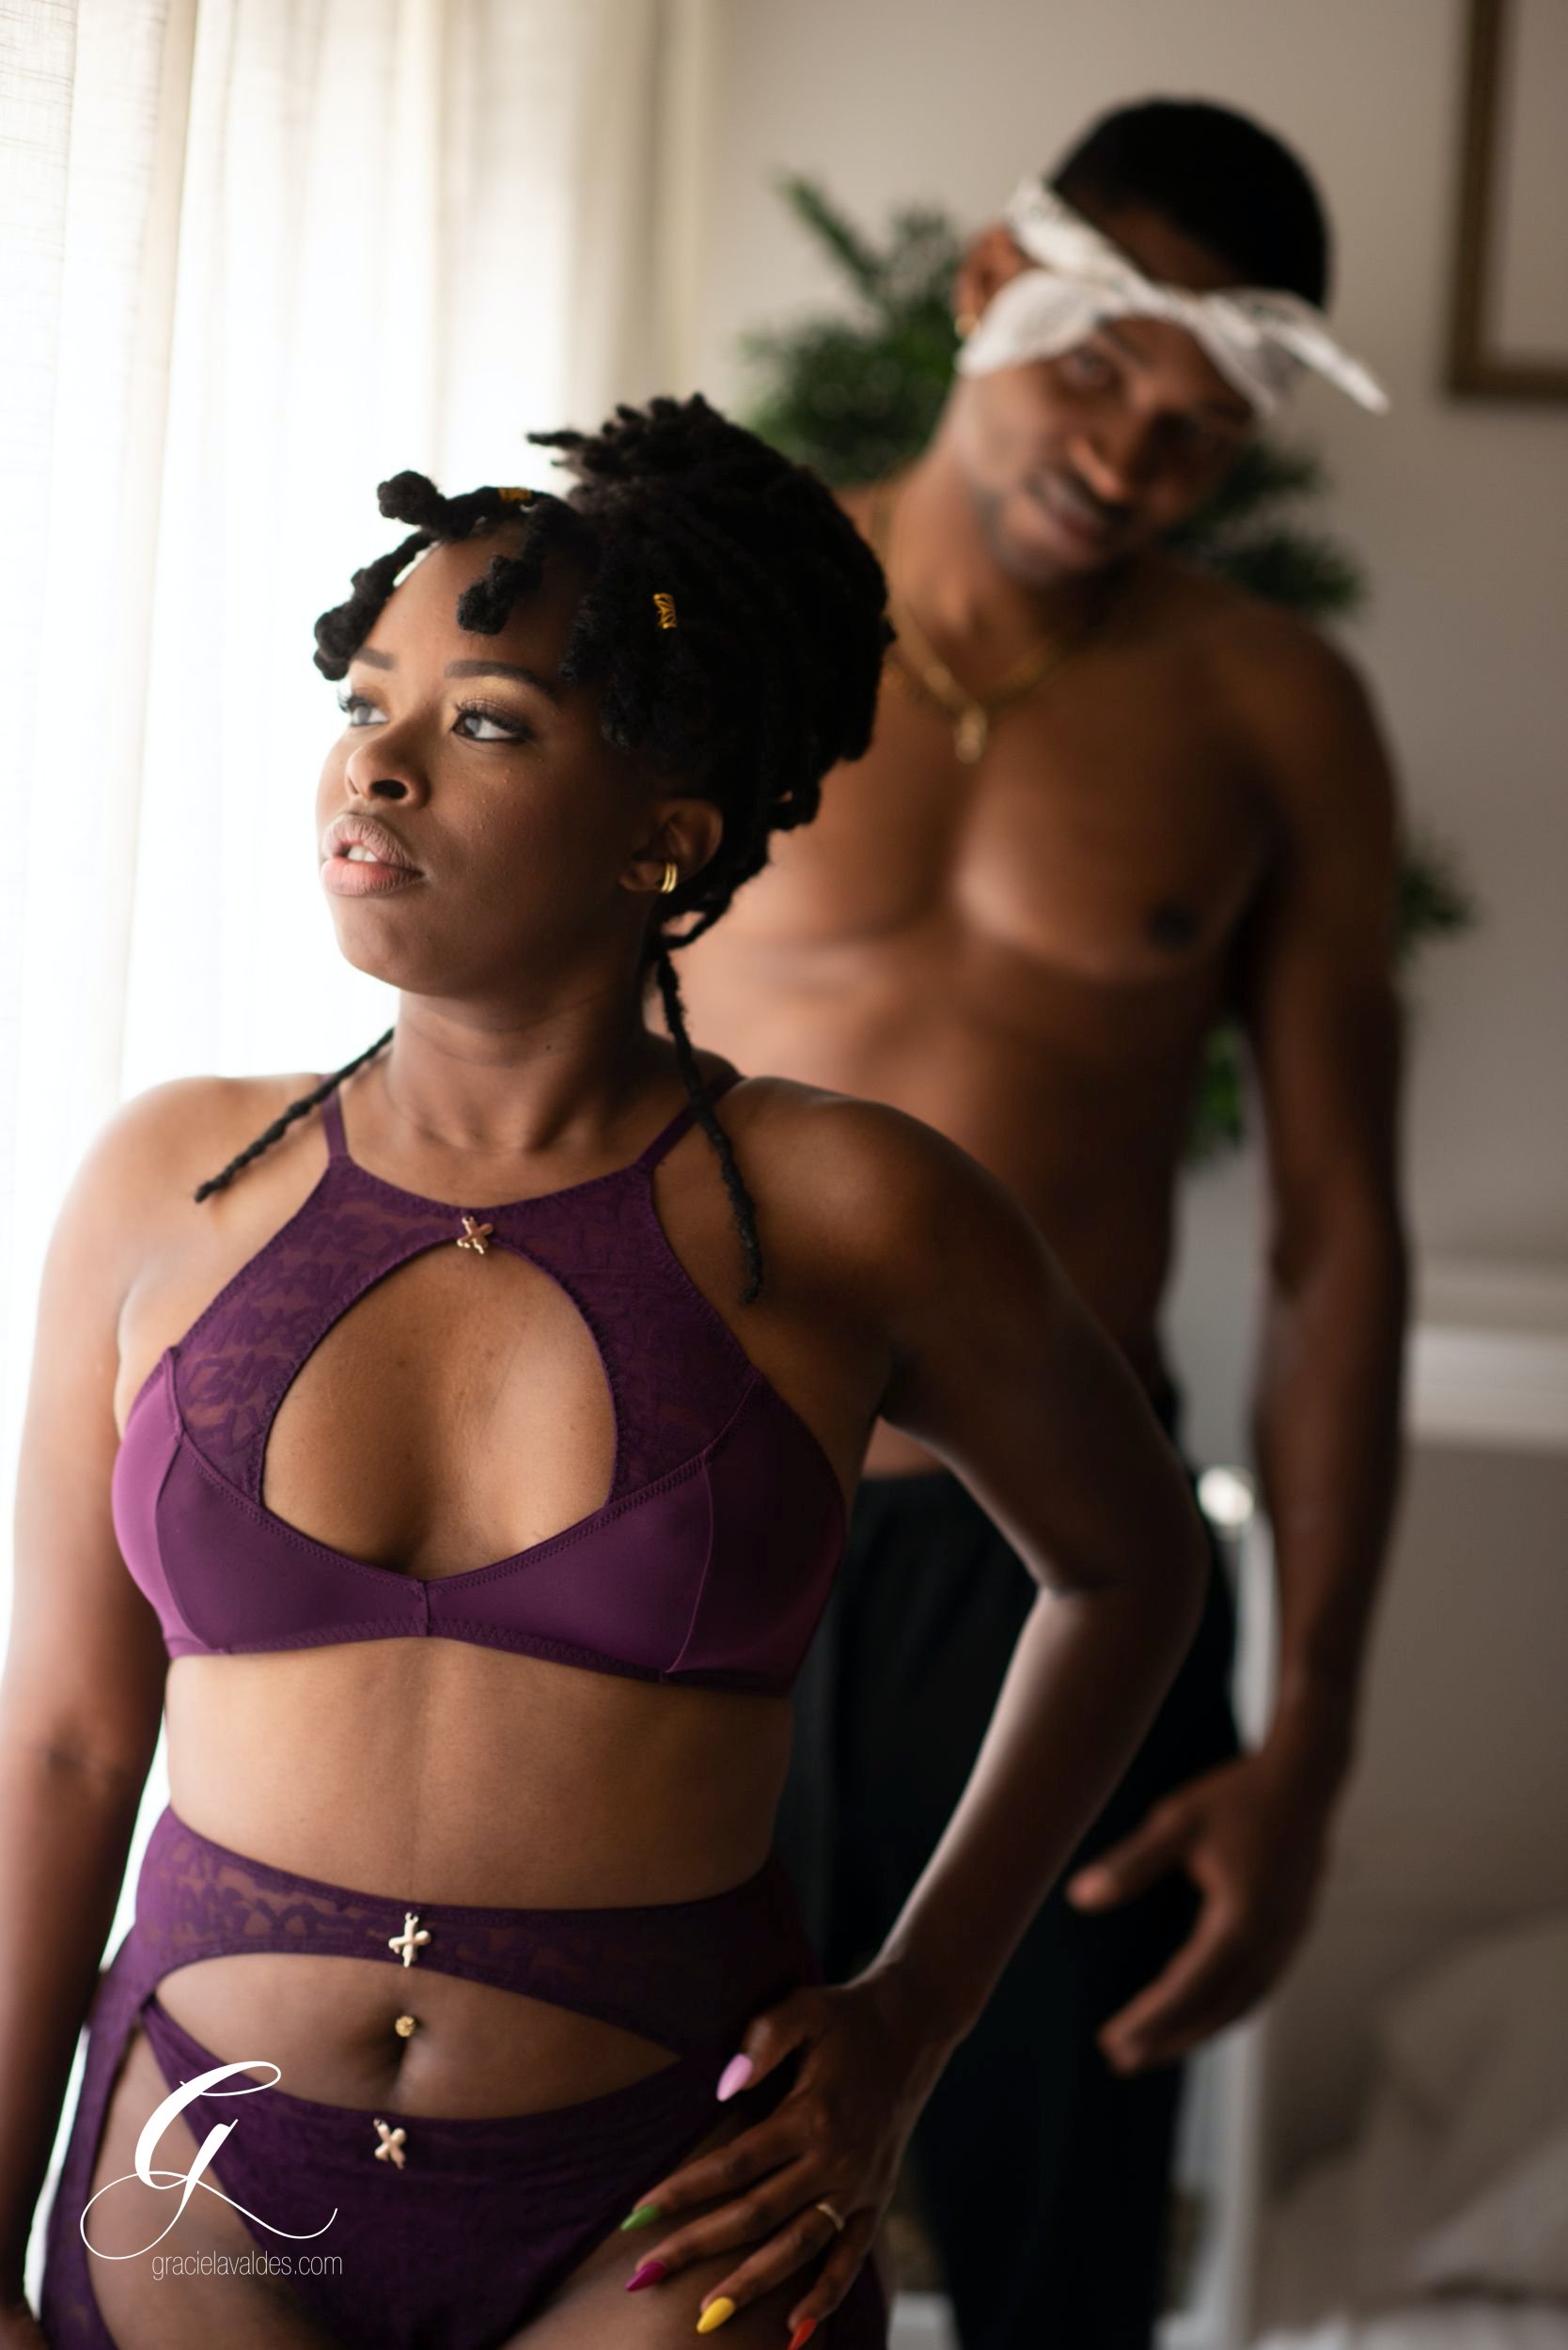 jamaican black couples boudoir portraits by graciela valdes 2.jpg